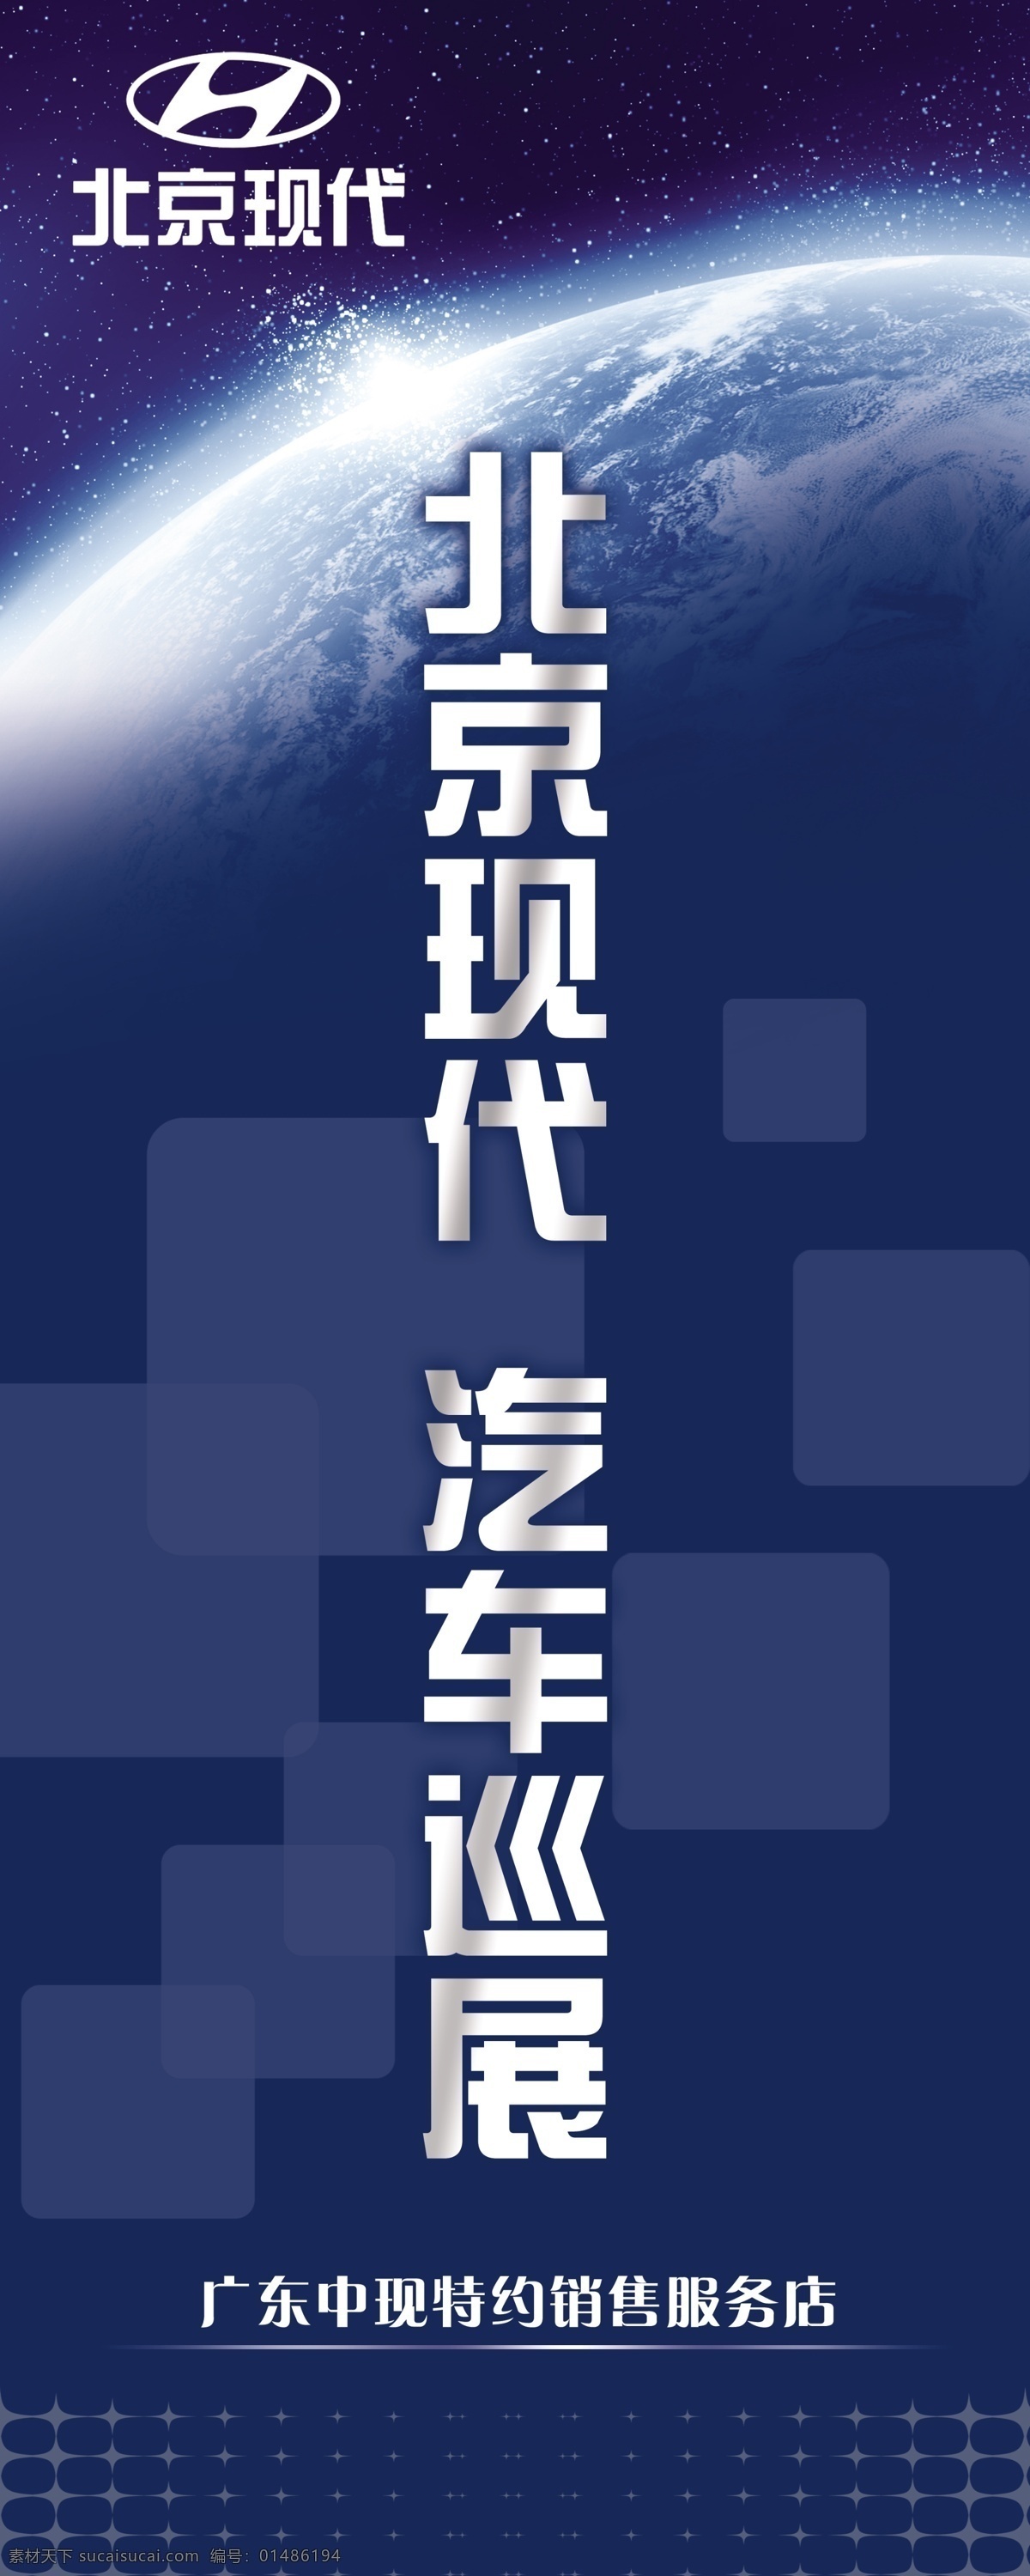 北京现代 易拉宝 x展架 展板模板设计 汽车展览会 试乘试驾活动 地球 太空 深蓝色 销售服务店 分层 广告设计模板 源文件